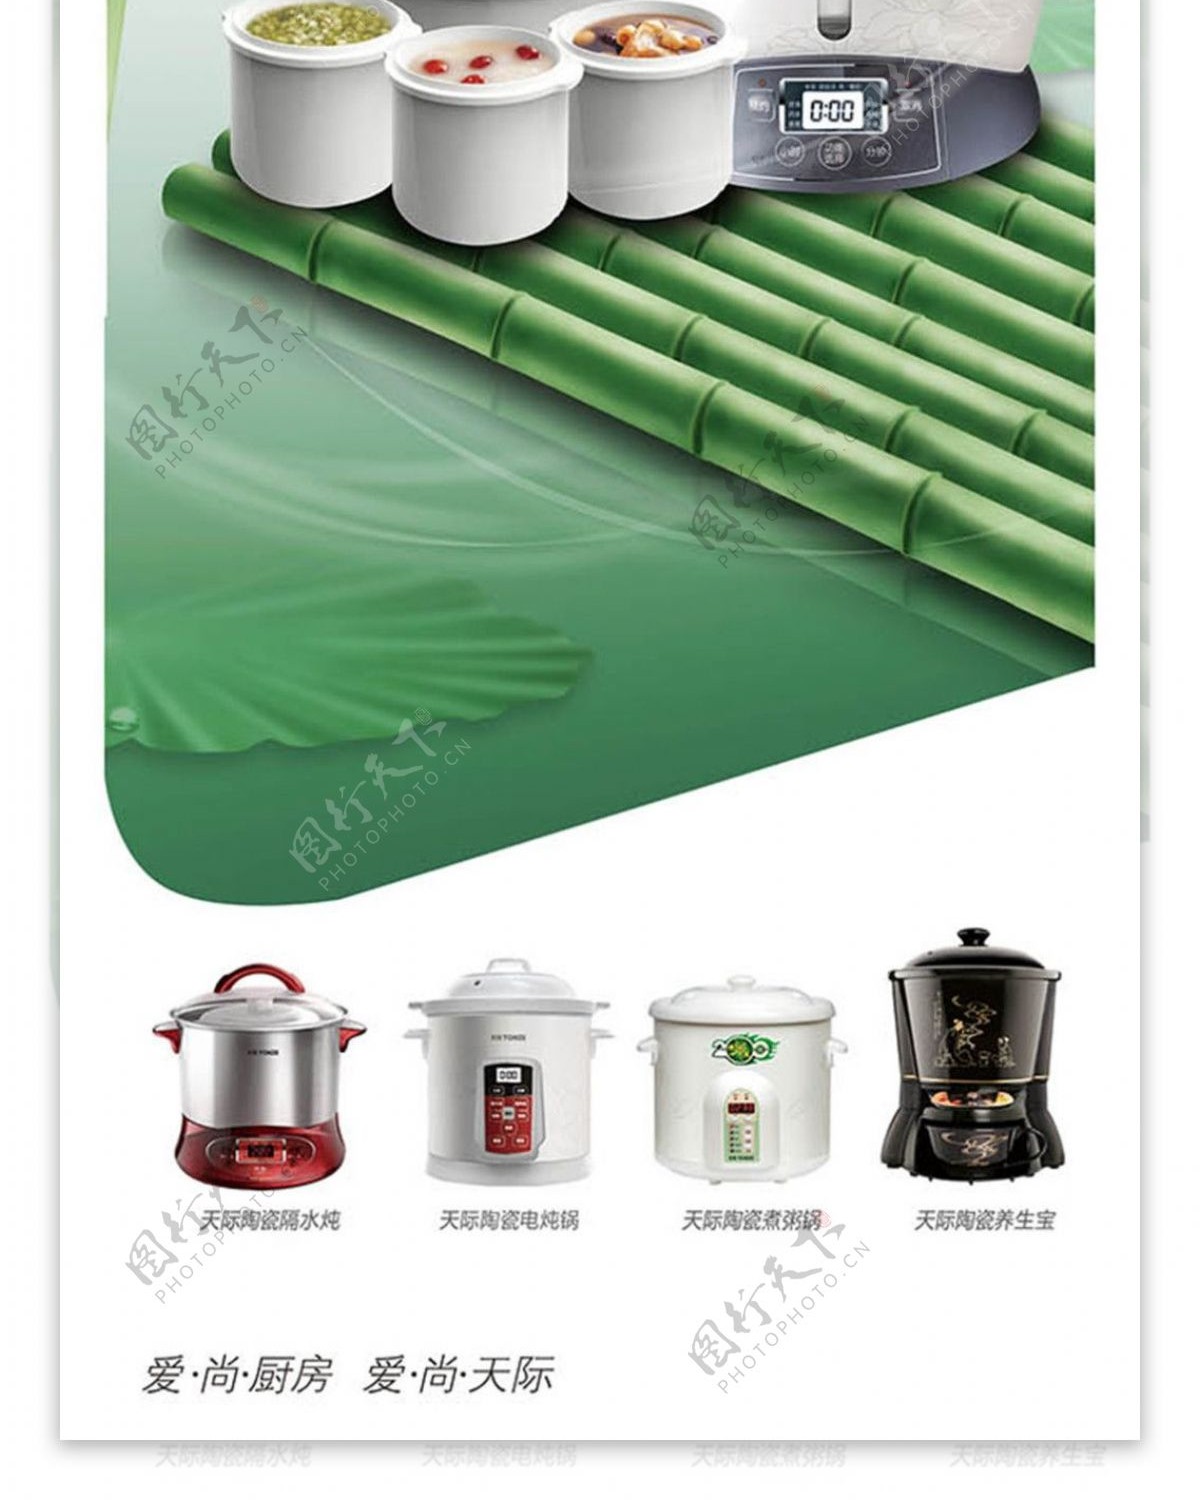 厨房电器电饭煲创意宣传海报x展架模板psd素材下载